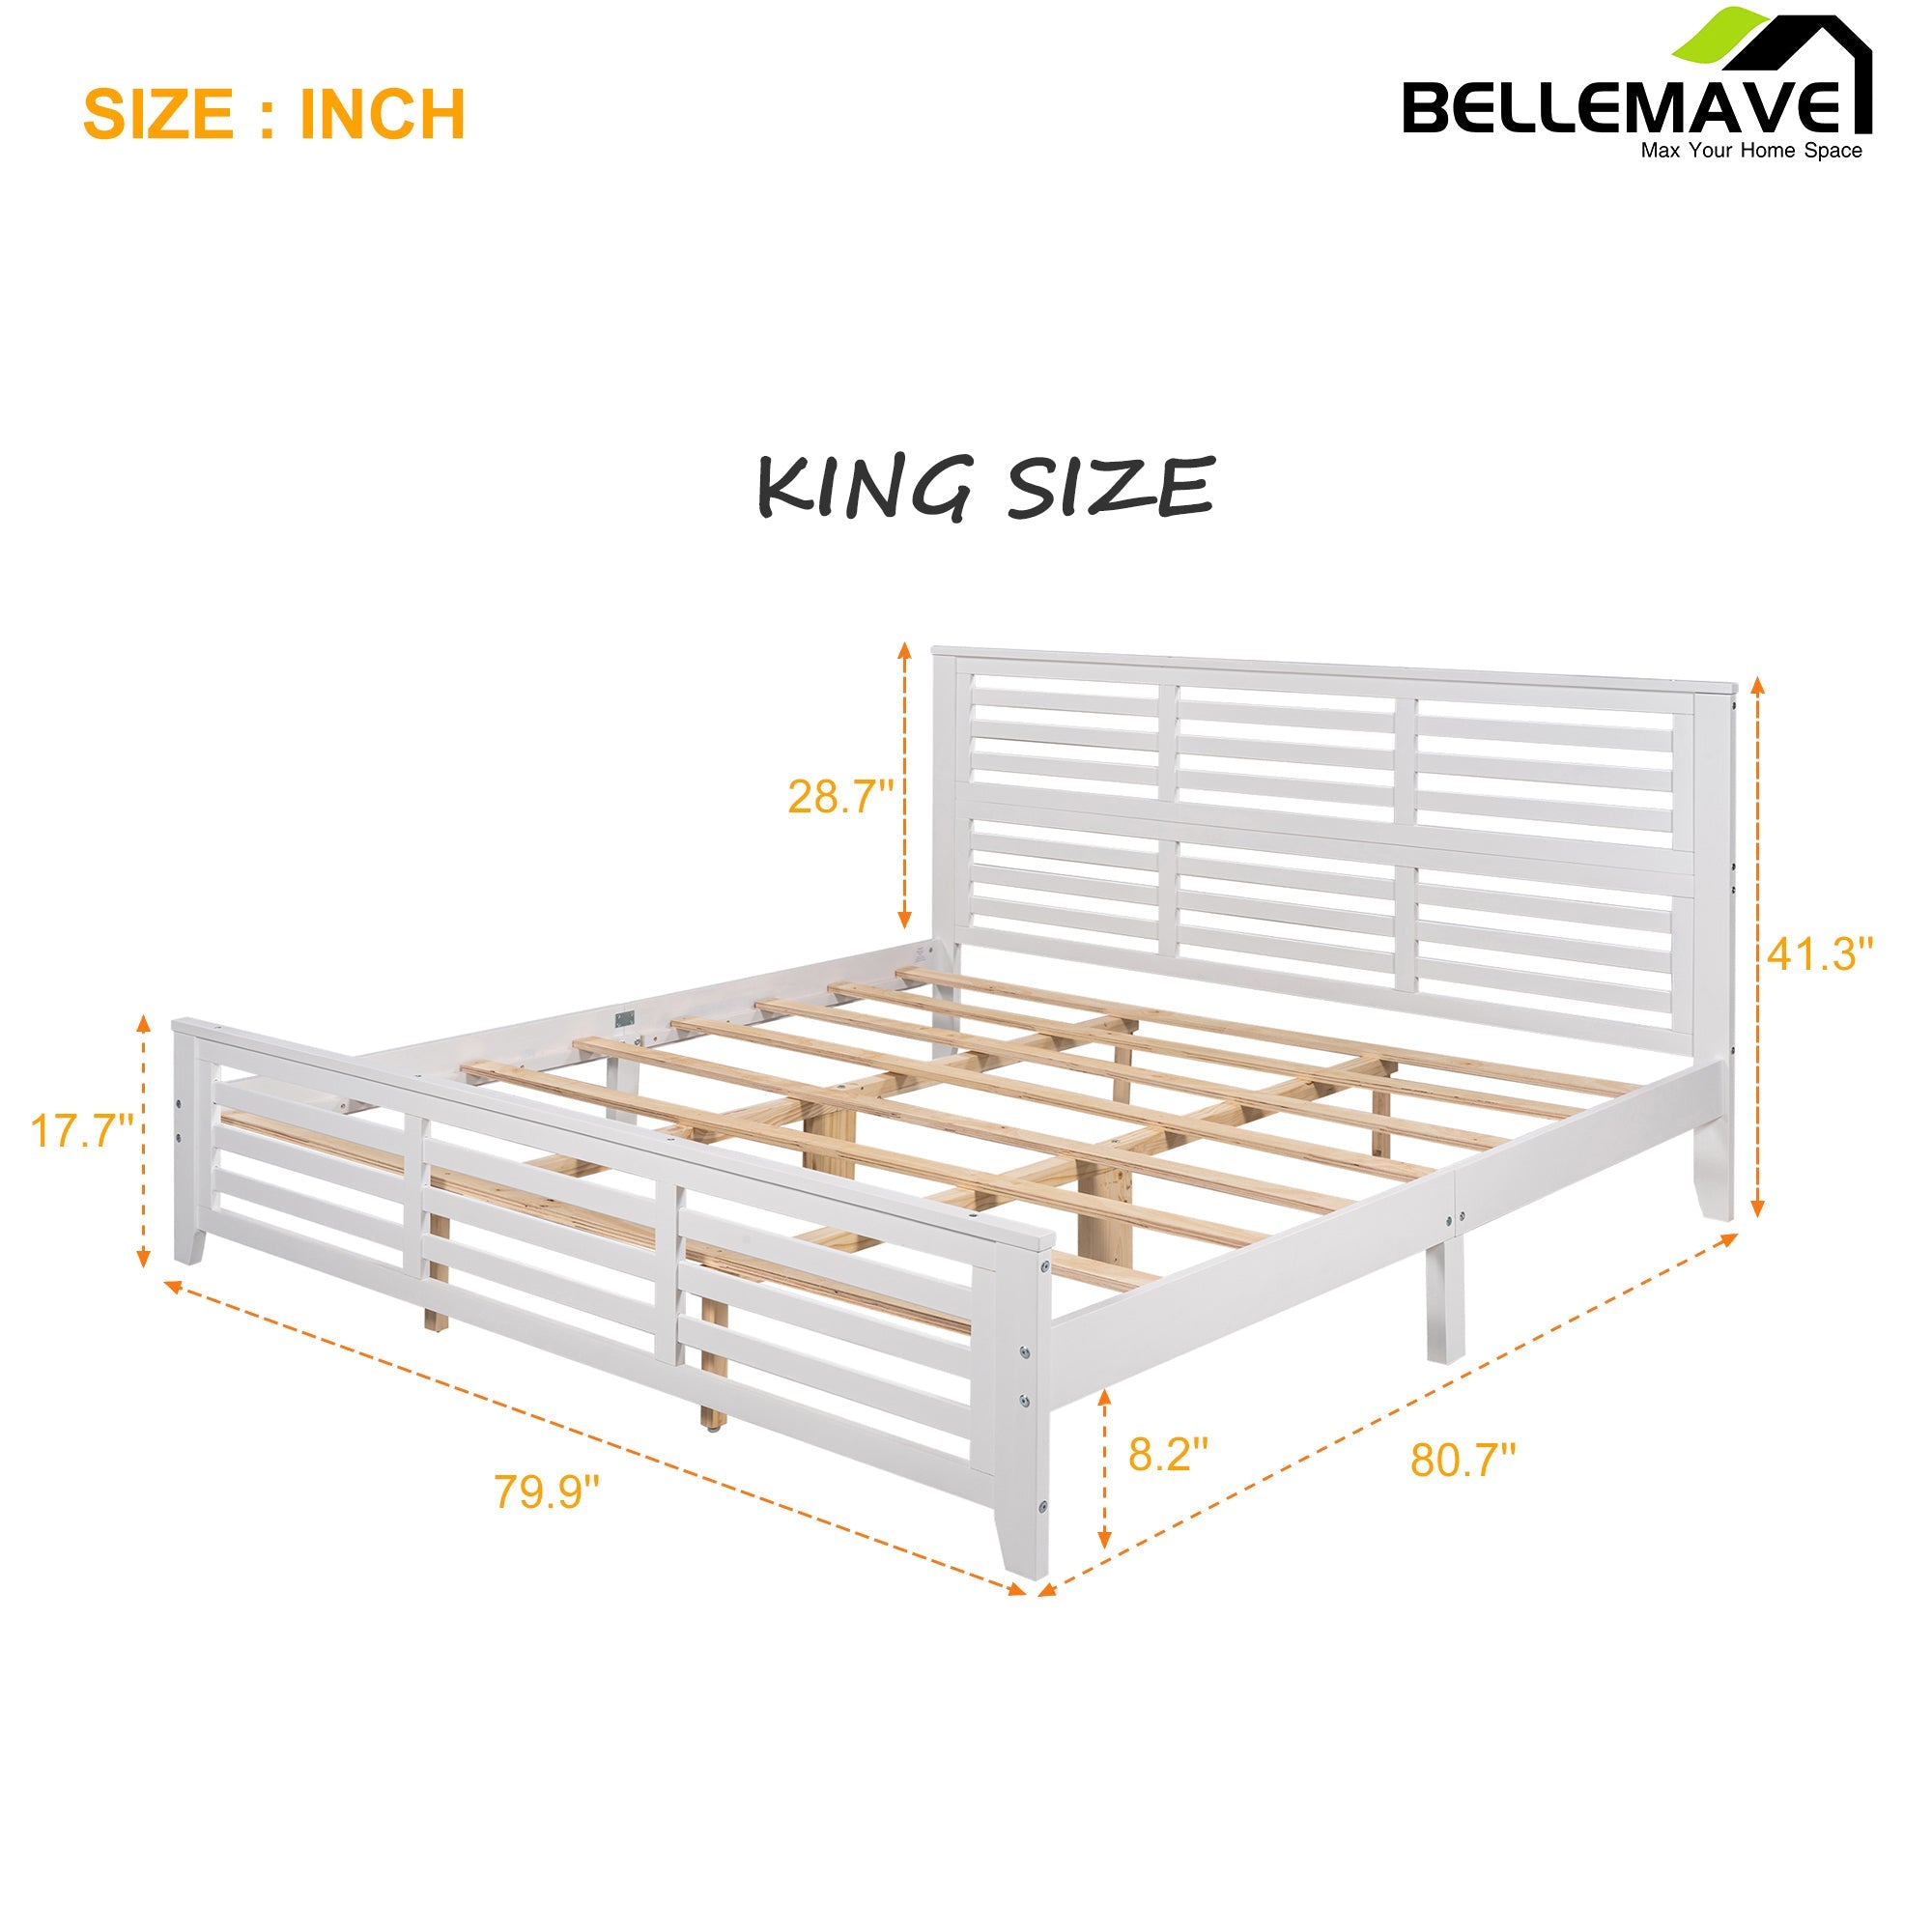 Bellemave King Size Platform Bed - Bellemave